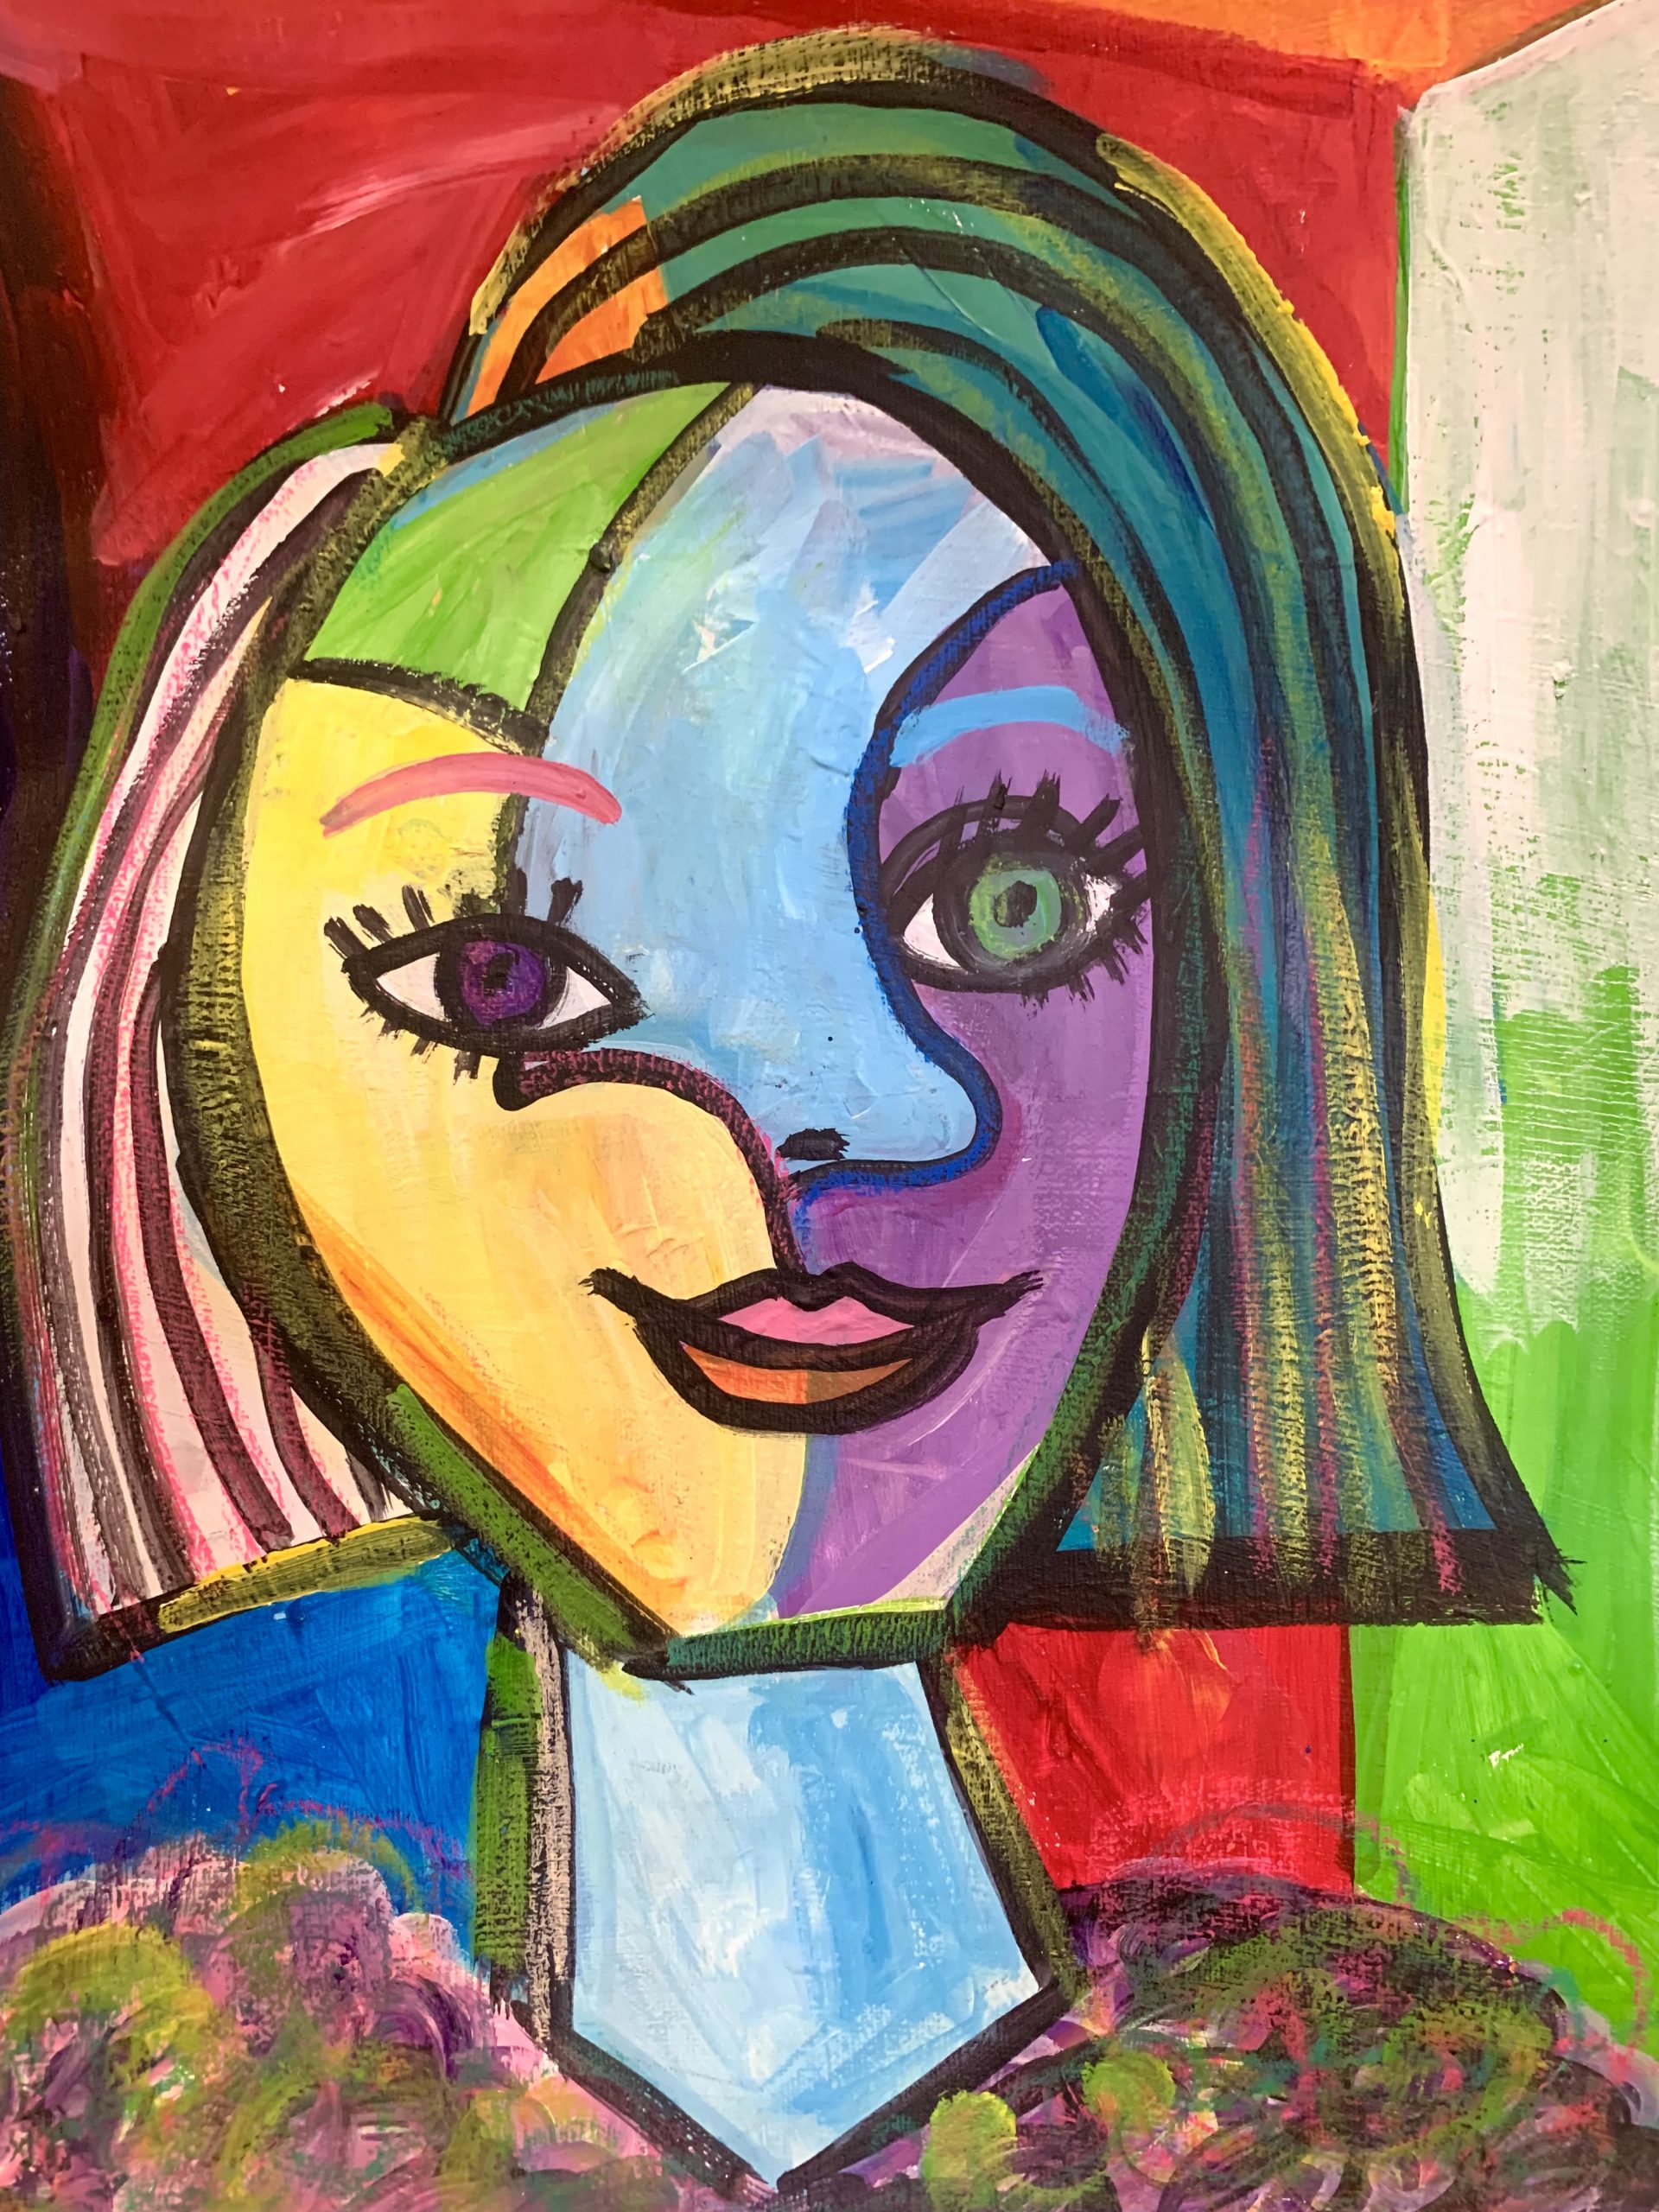 KIDS キッズピカソのスタイルで自画像 Picasso Self-Portrait – Artbar 